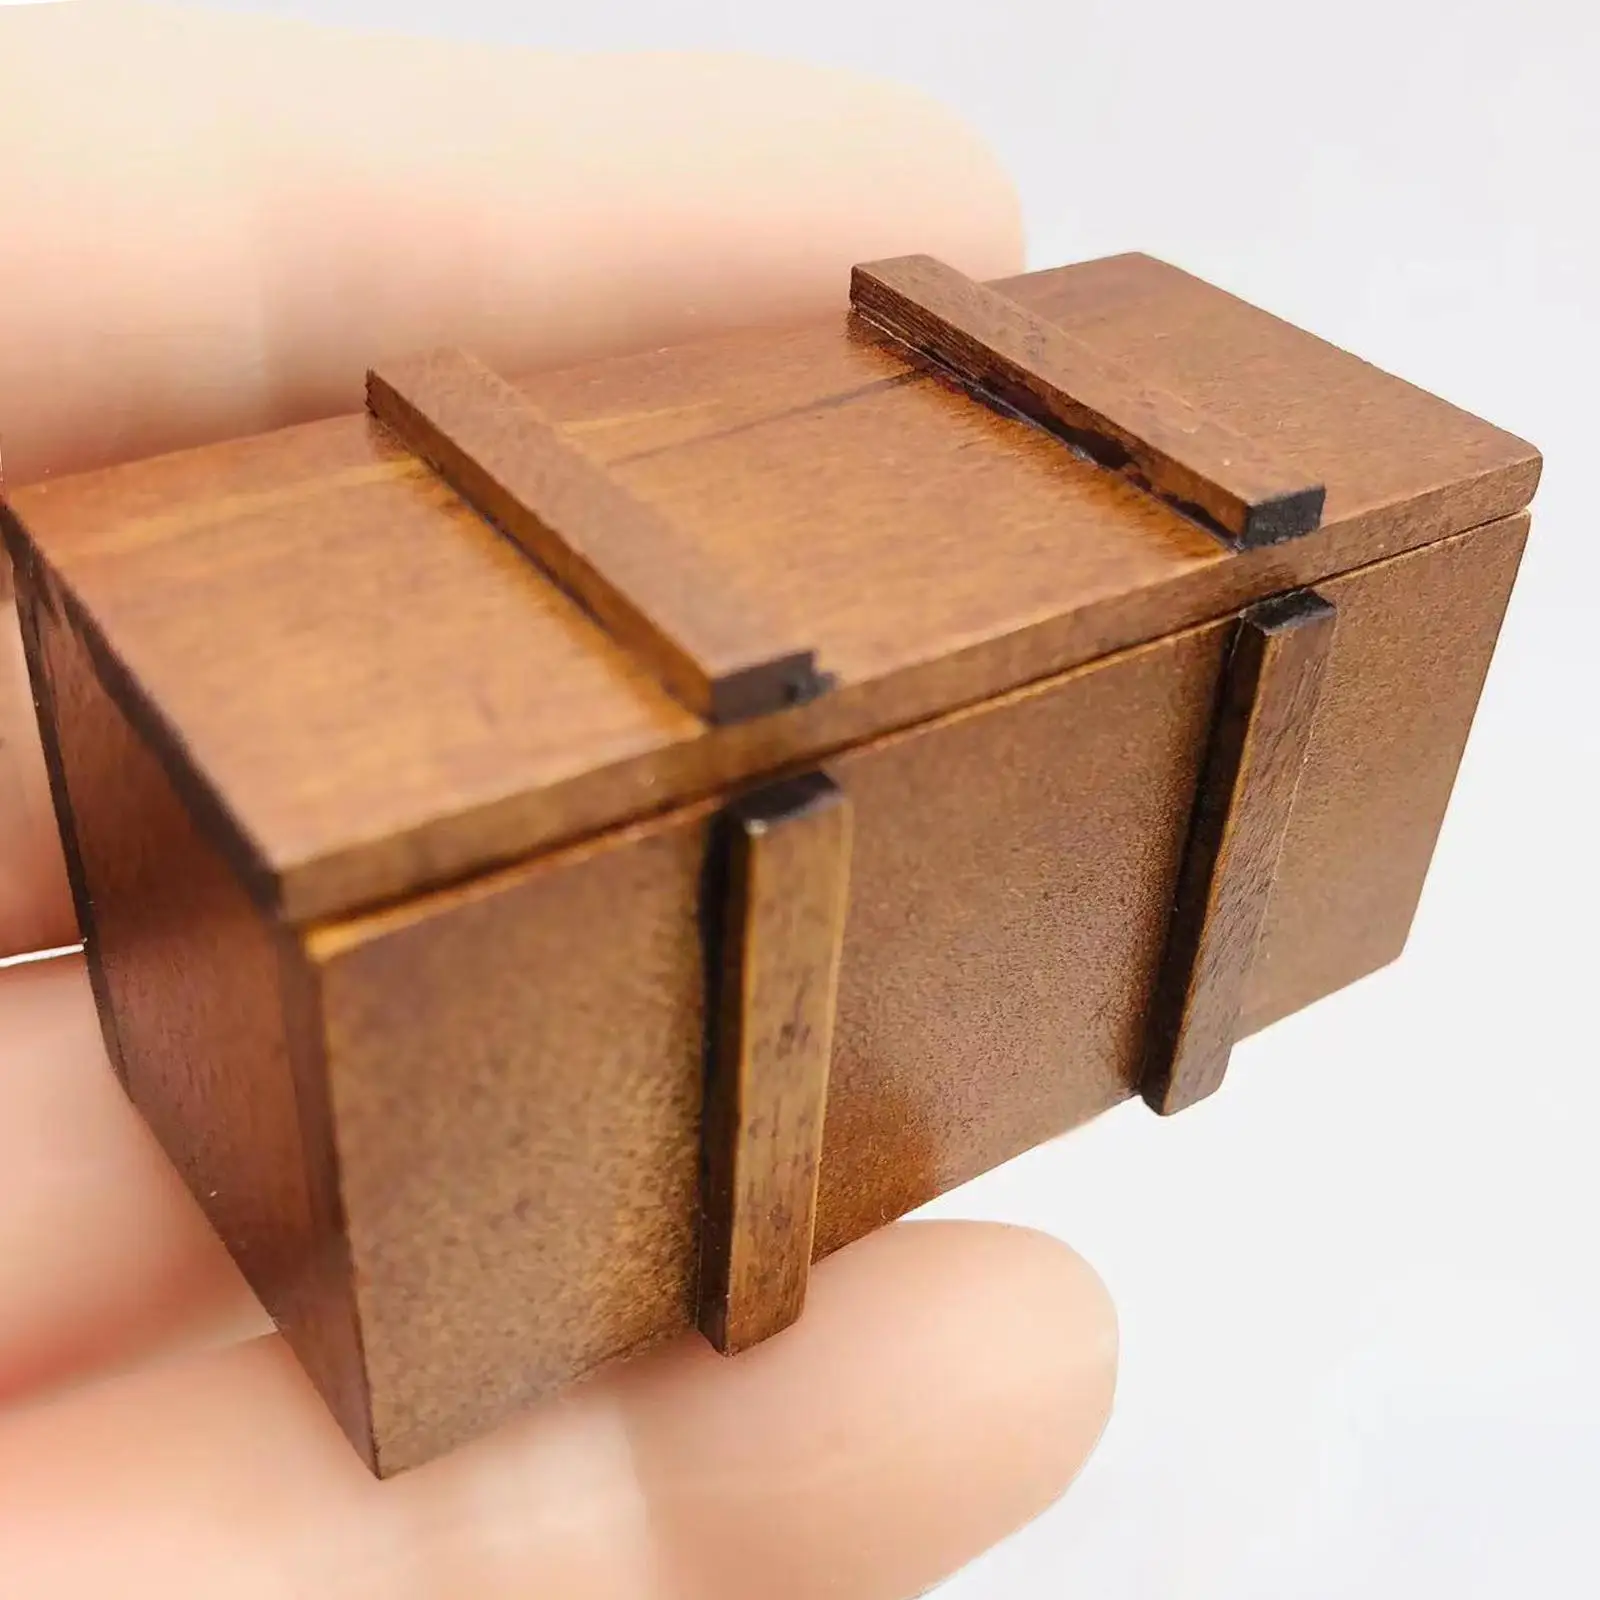 1:12 Doll House Retro Wooden Treasure Chest Mini Model Accessory Treasure Box Holder